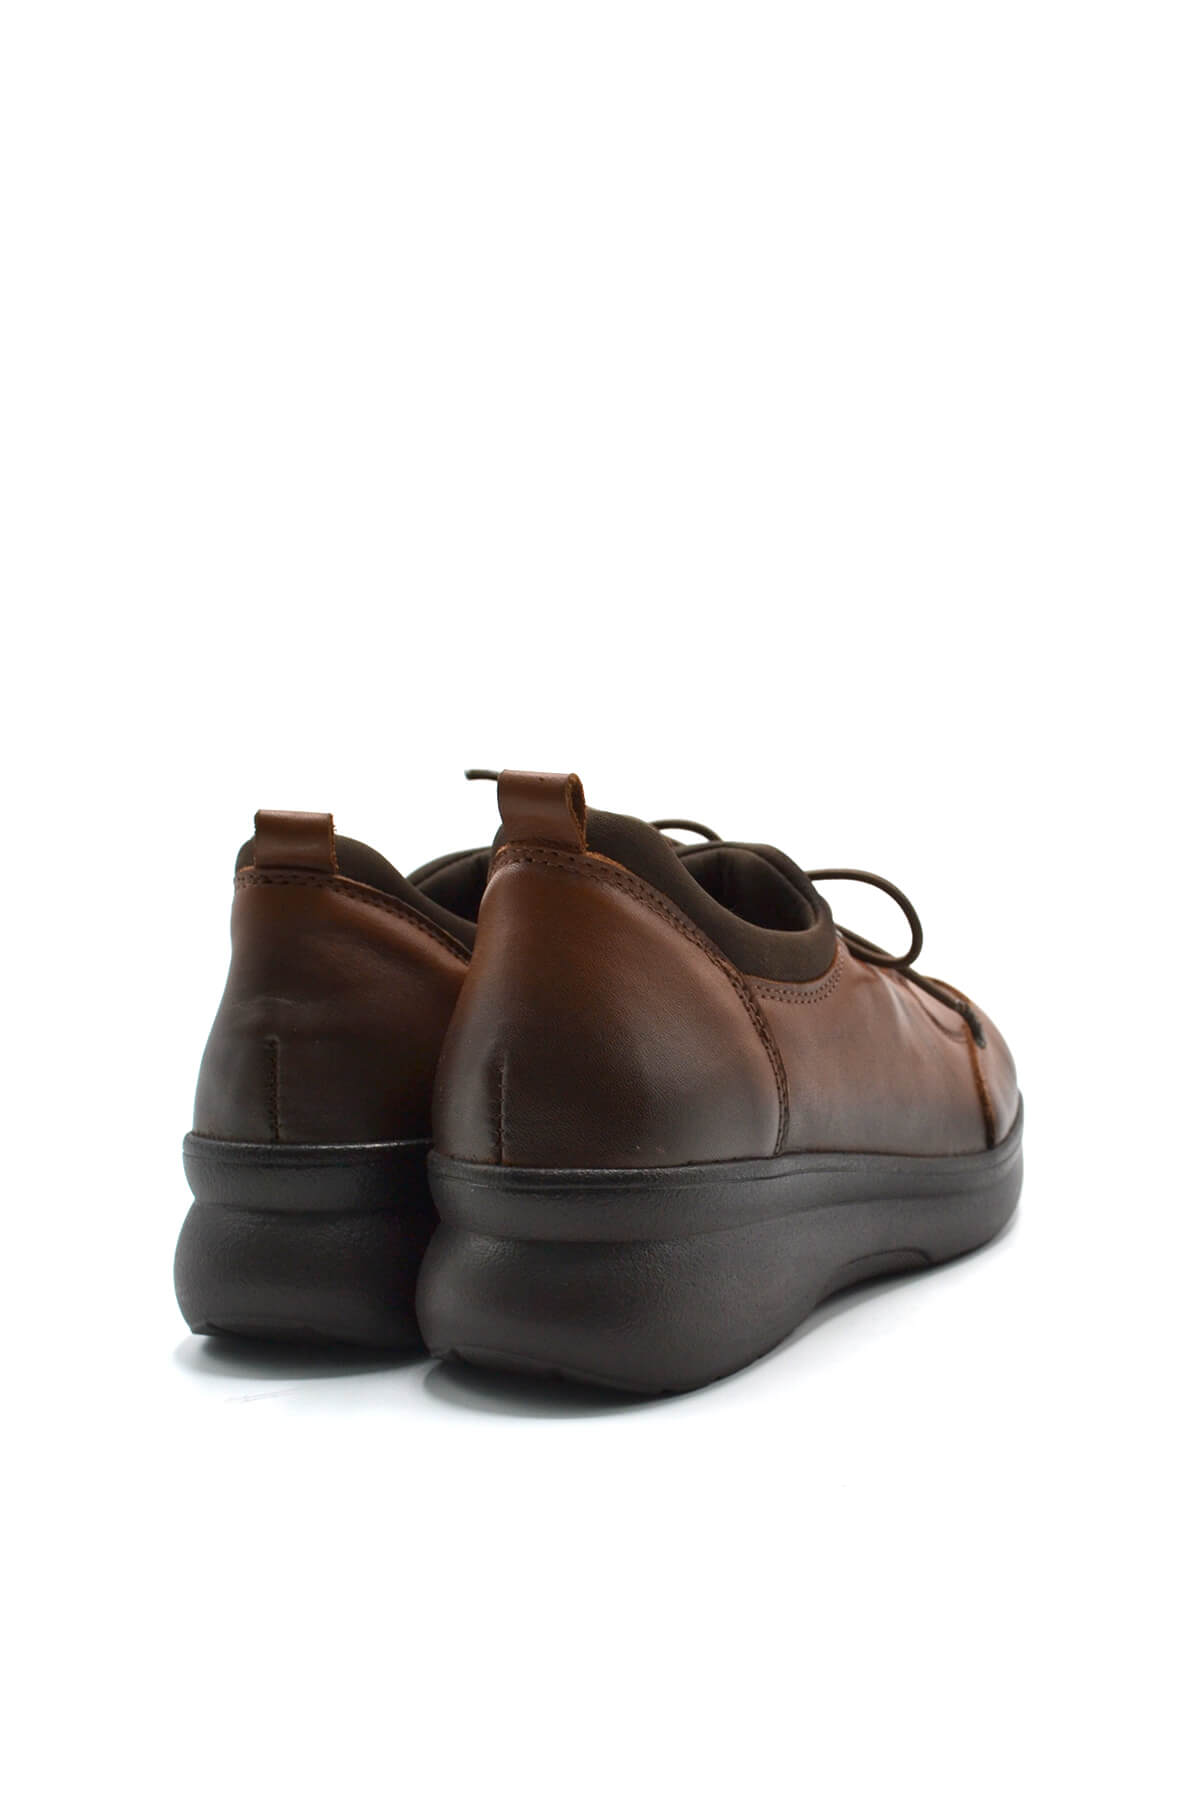 Kadın Comfort Deri Ayakkabı Taba 1901707K - Thumbnail